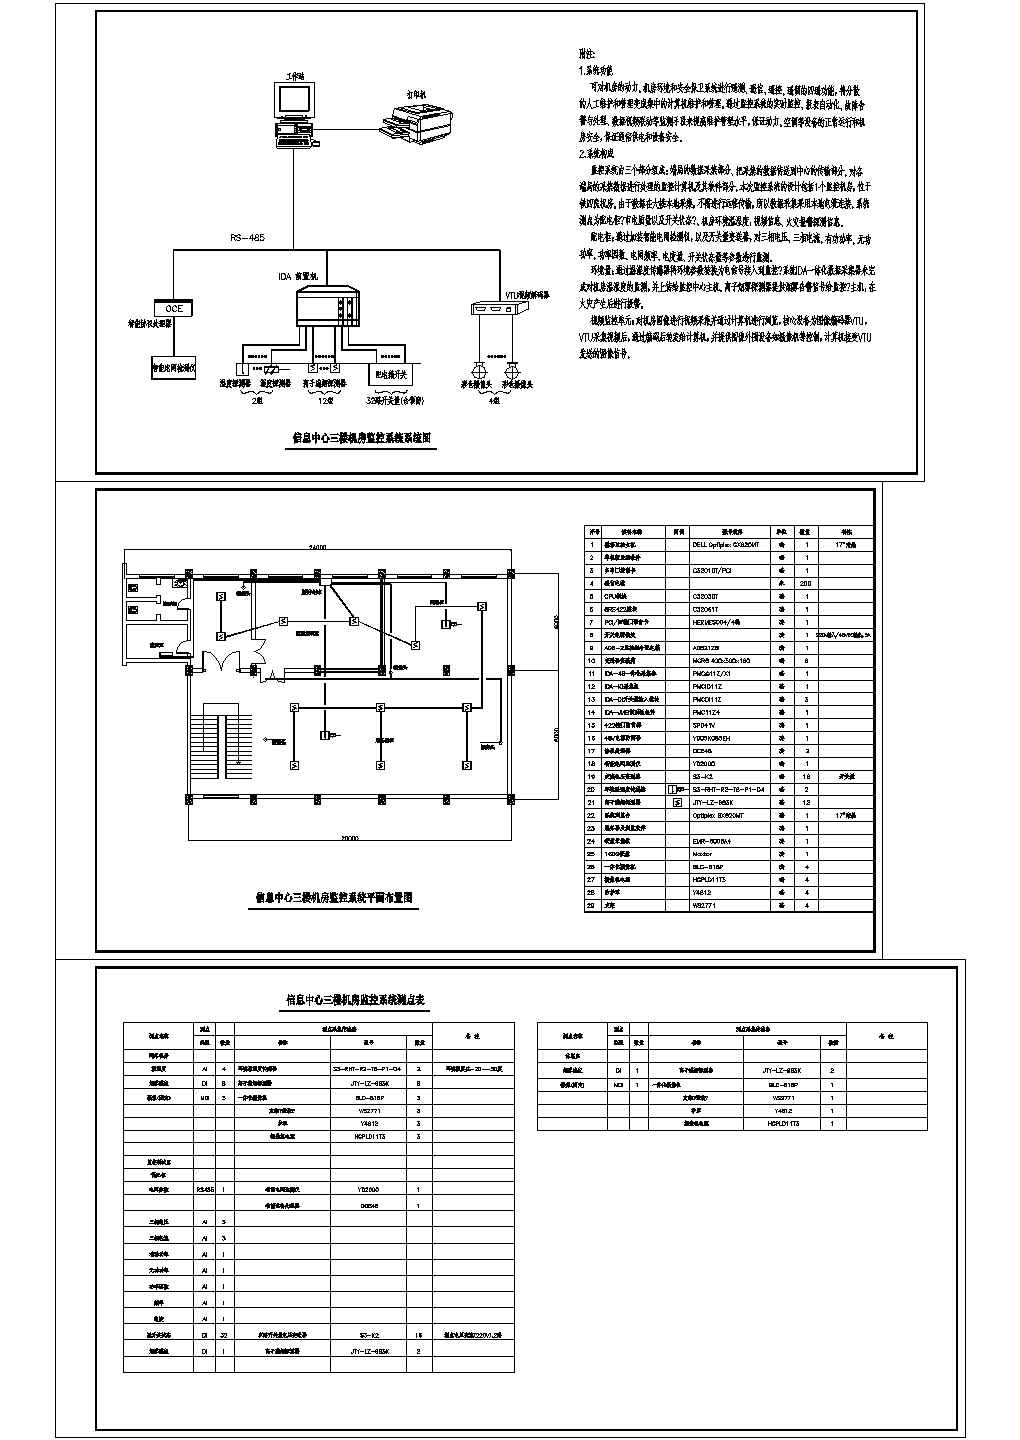 机房环境与设备监控系统CAD图